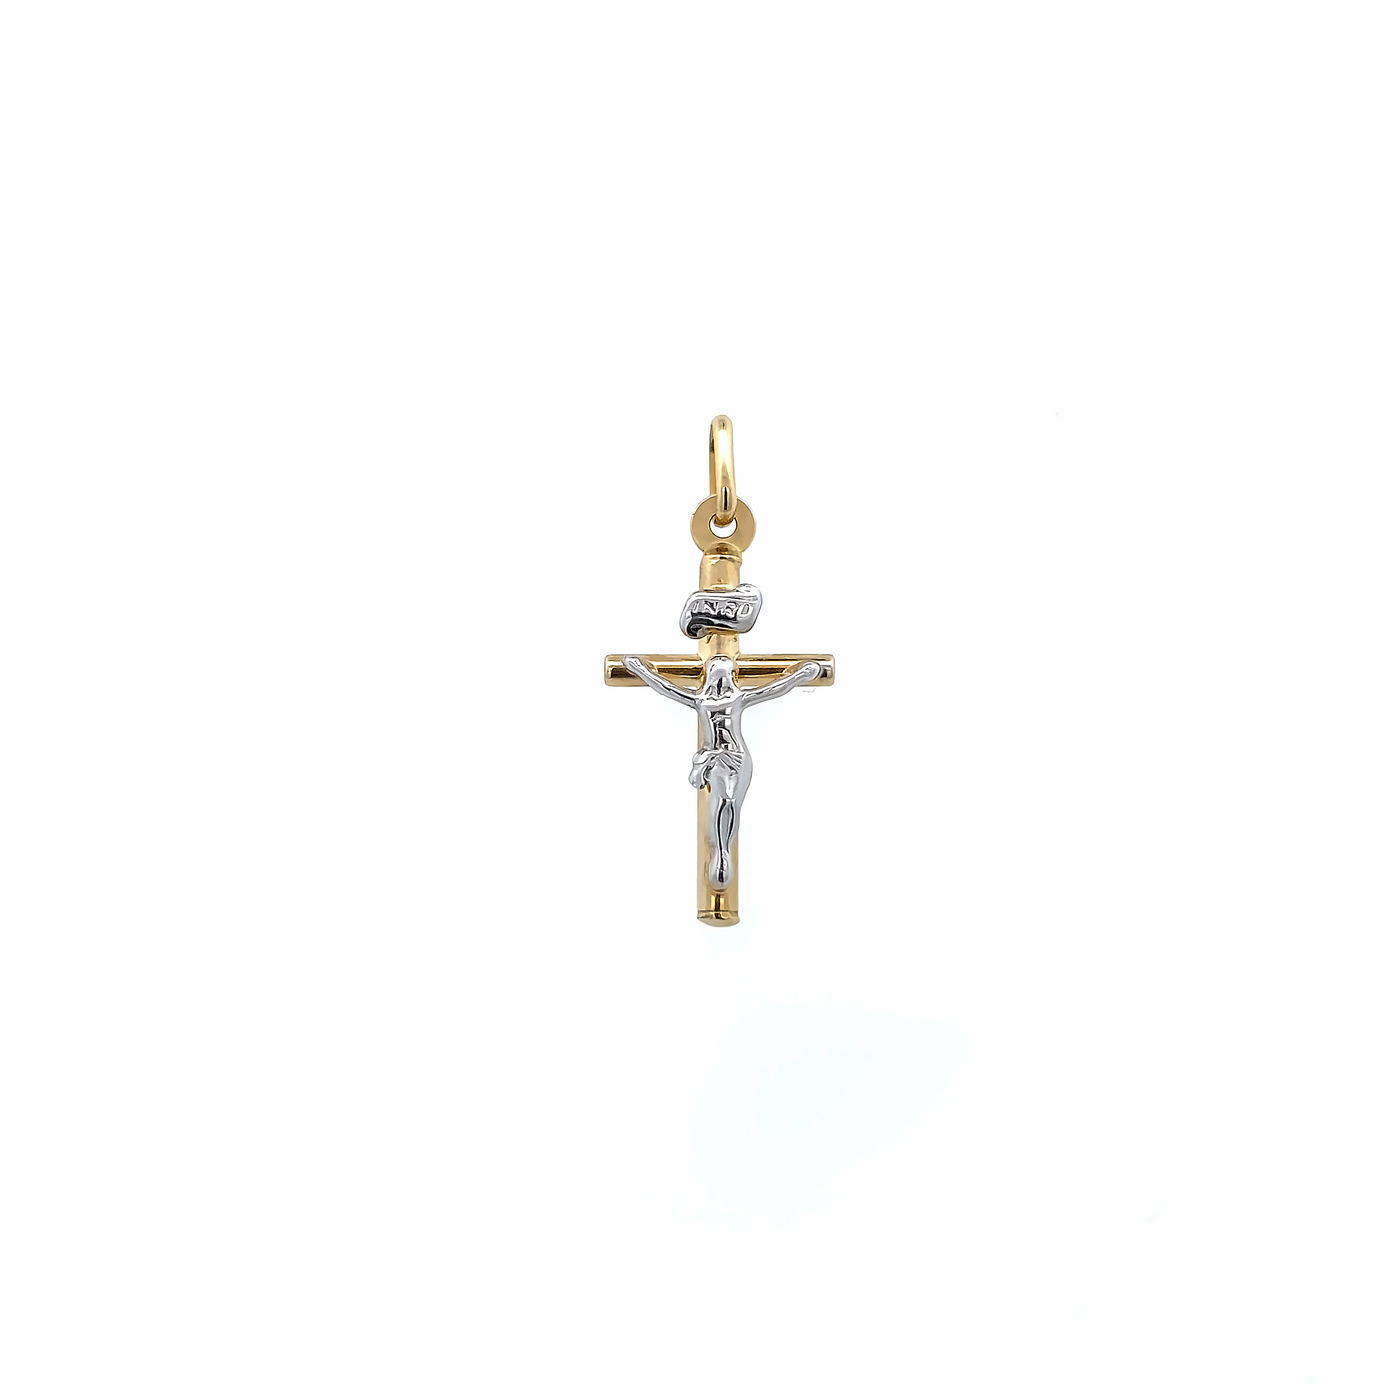 10 Karat Yellow and White Gold Small Crucifix Cross Pendant